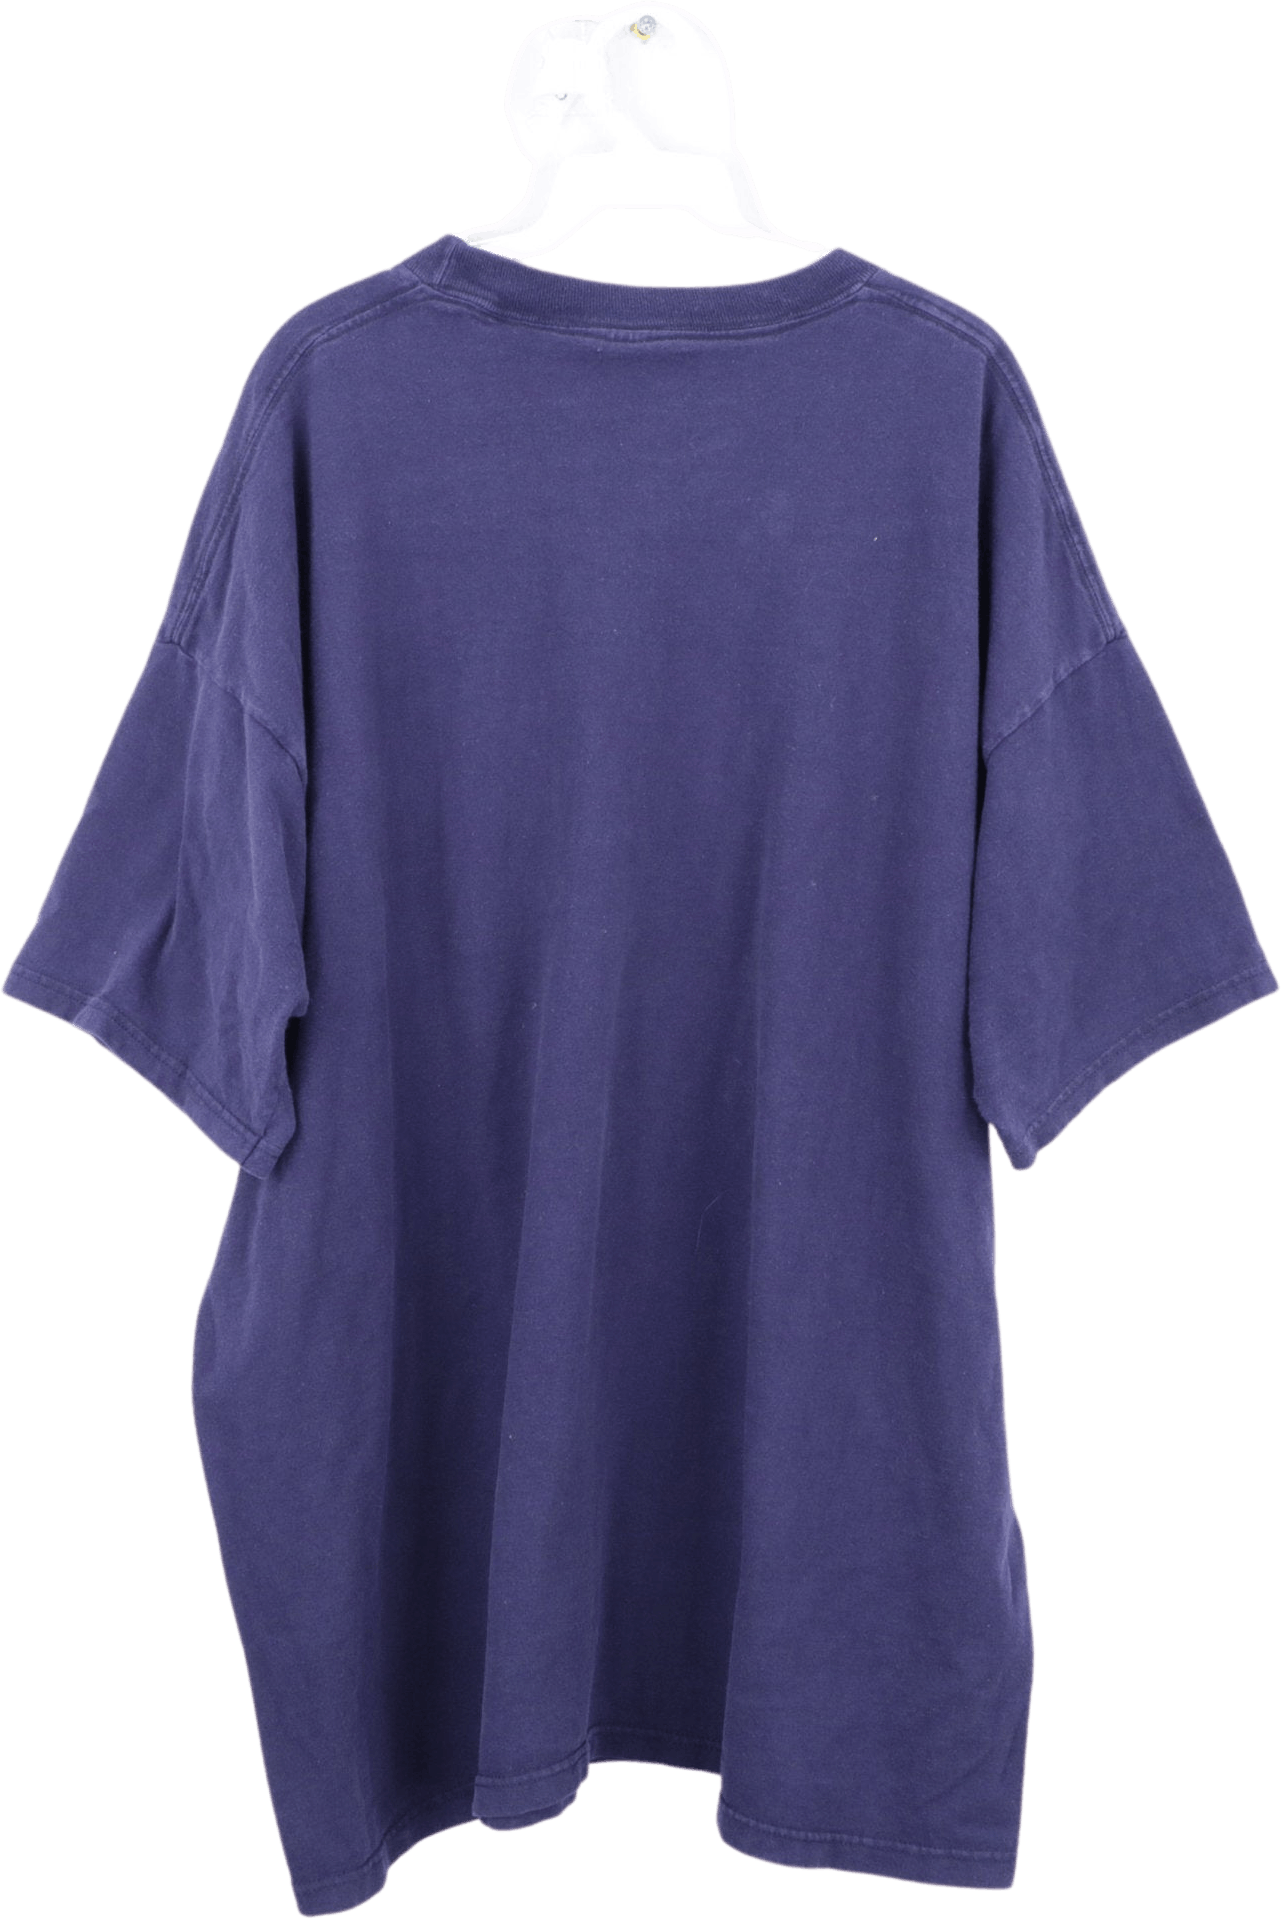 Vintage 90's Men's Blue Pocket T-Shirt by BVD | Shop THRILLING